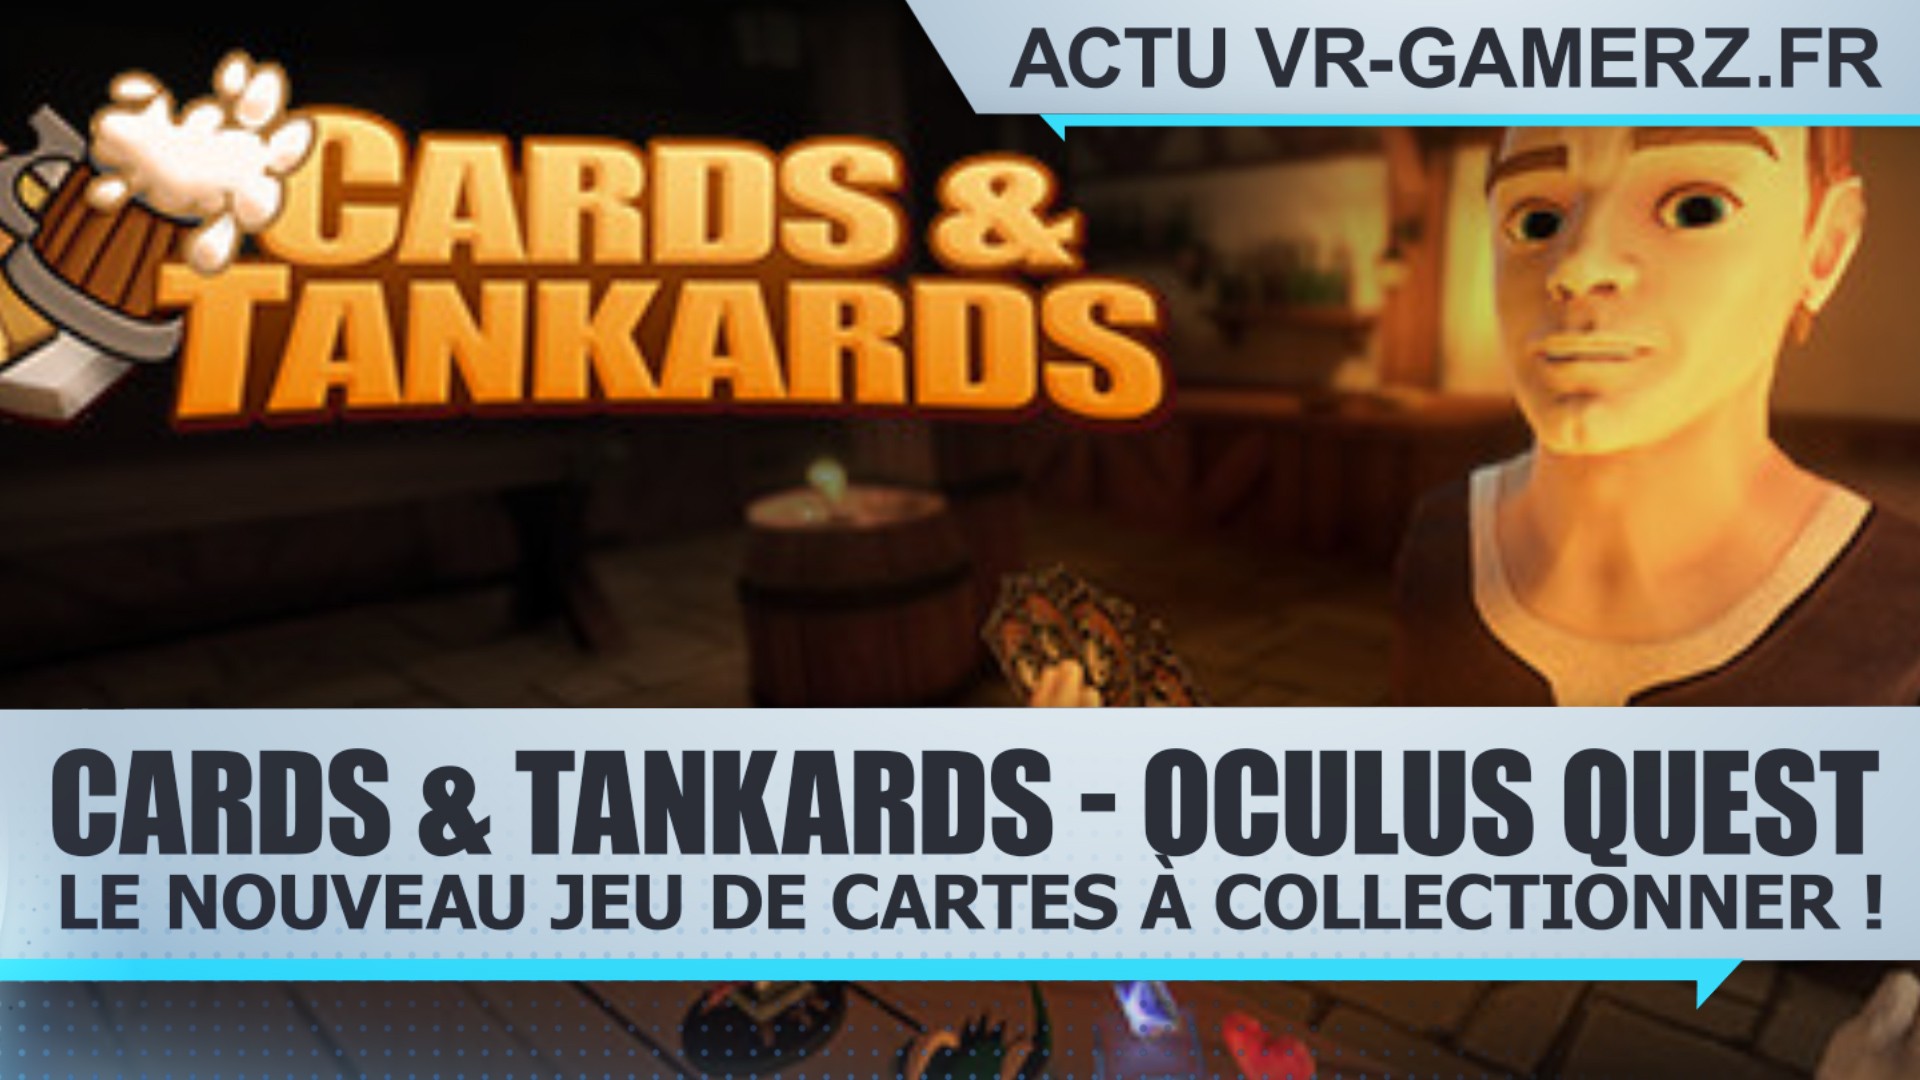 Découvrez Cards & Tankards sur Oculus quest : Le nouveau jeu de cartes à collectionner !